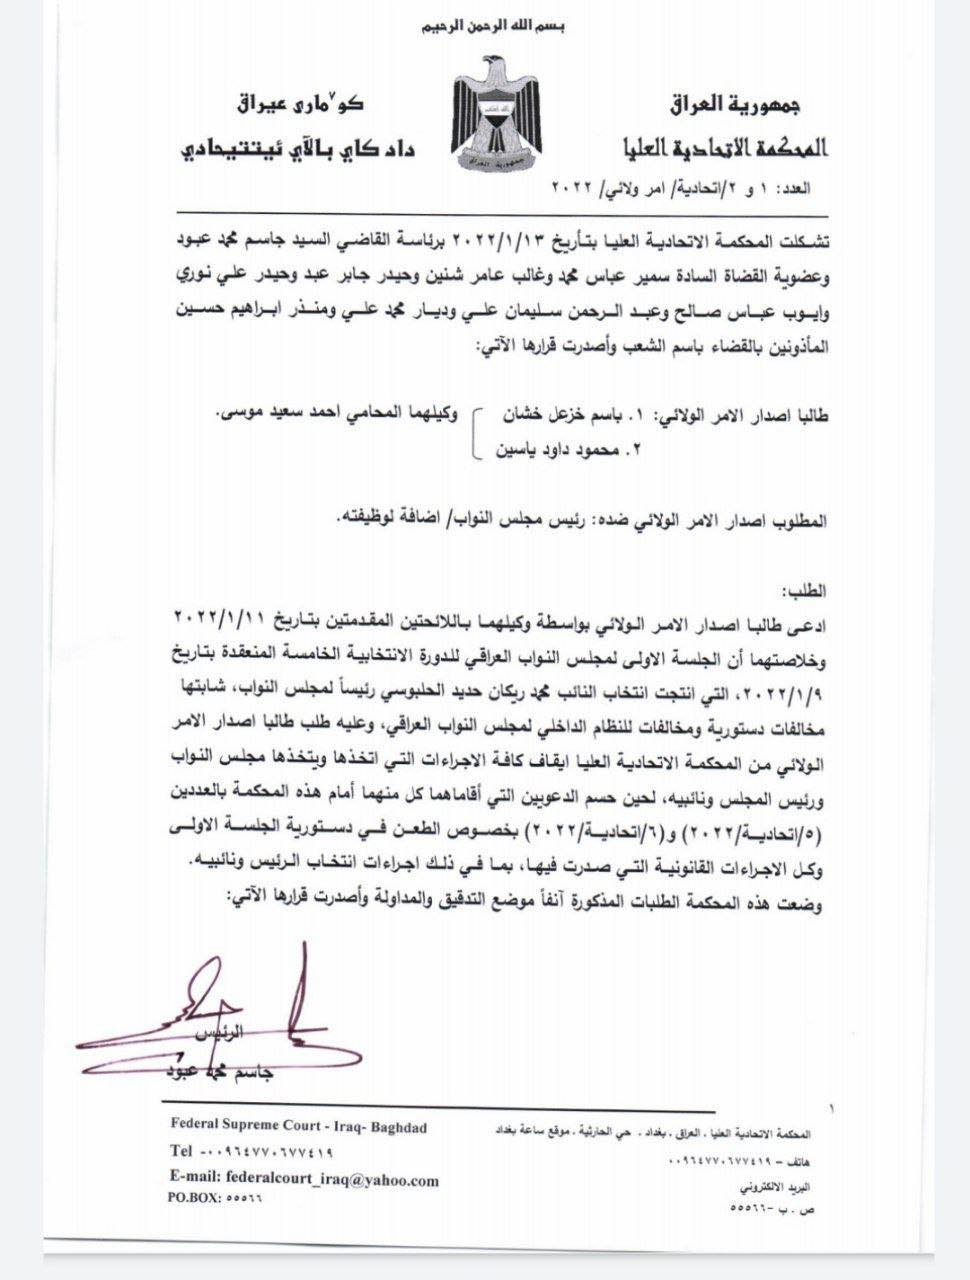 المحكمة الاتحادية تقرر إيقاف عمل هيئة رئاسة البرلمان العراقي مؤقتاً  270107563_318111256905004_1623417884687366654_n